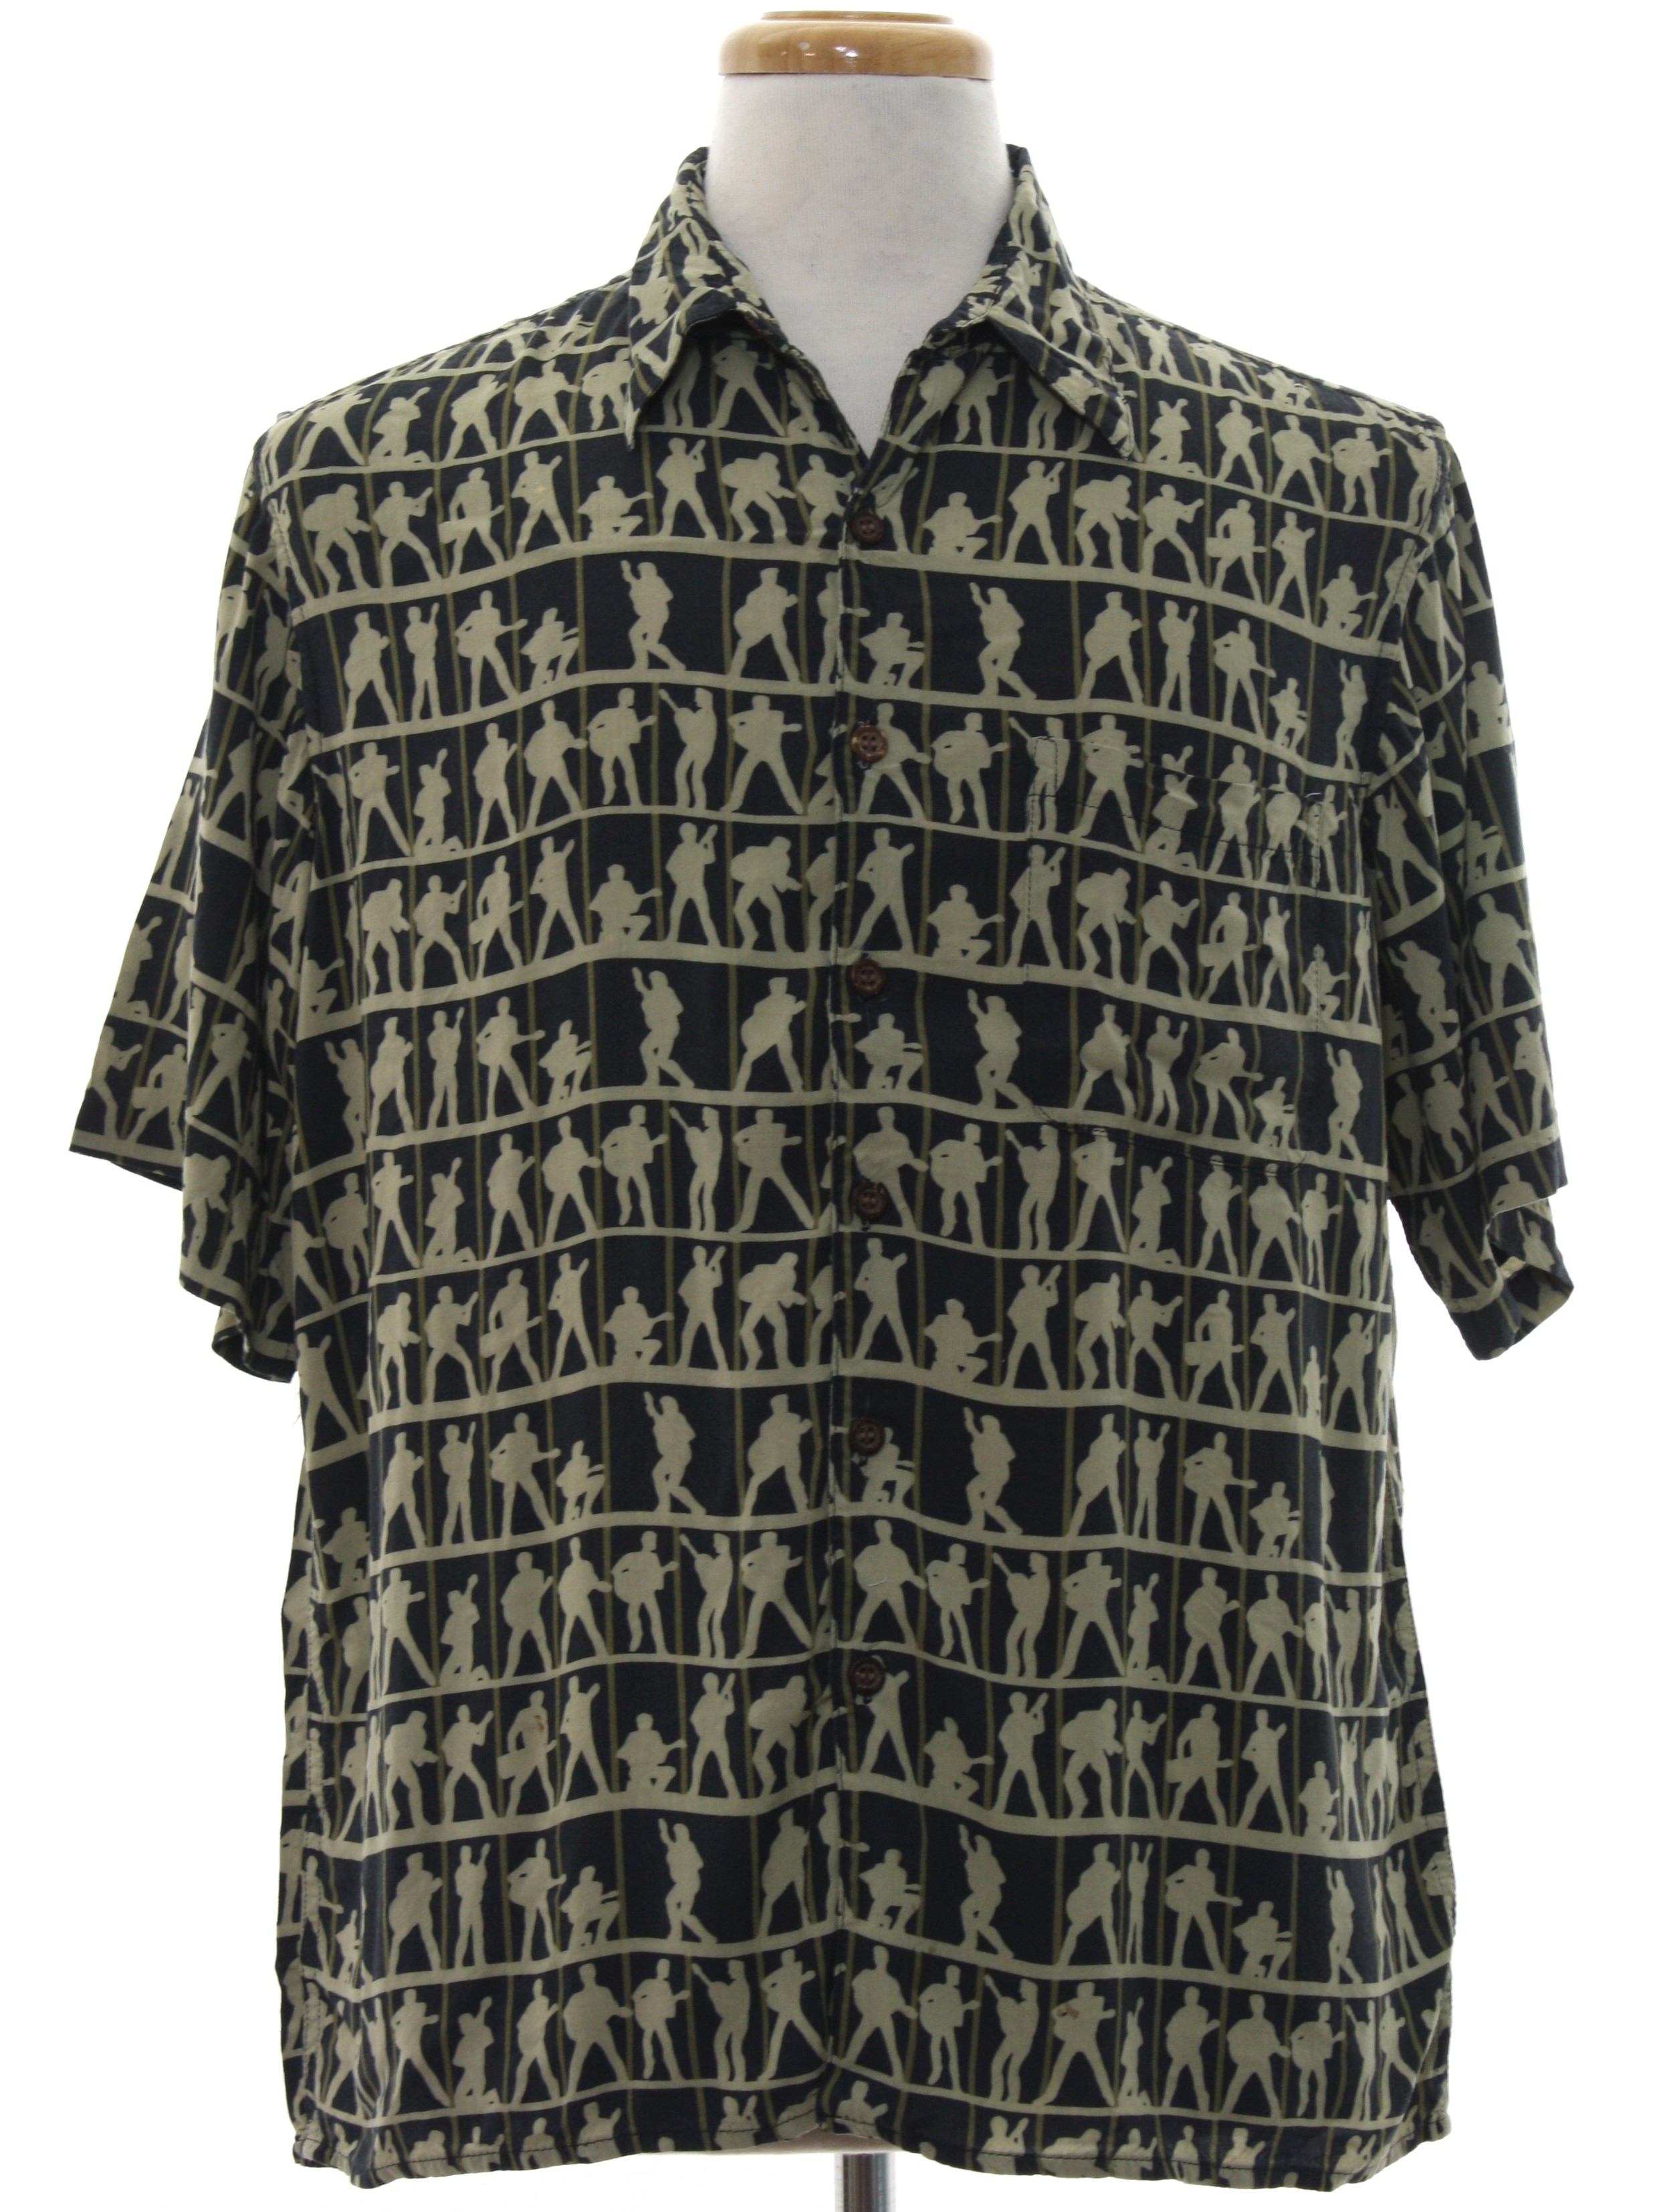 1990's Retro Hawaiian Shirt: 90s -Reyn Spooner Elvis Presley- Mens